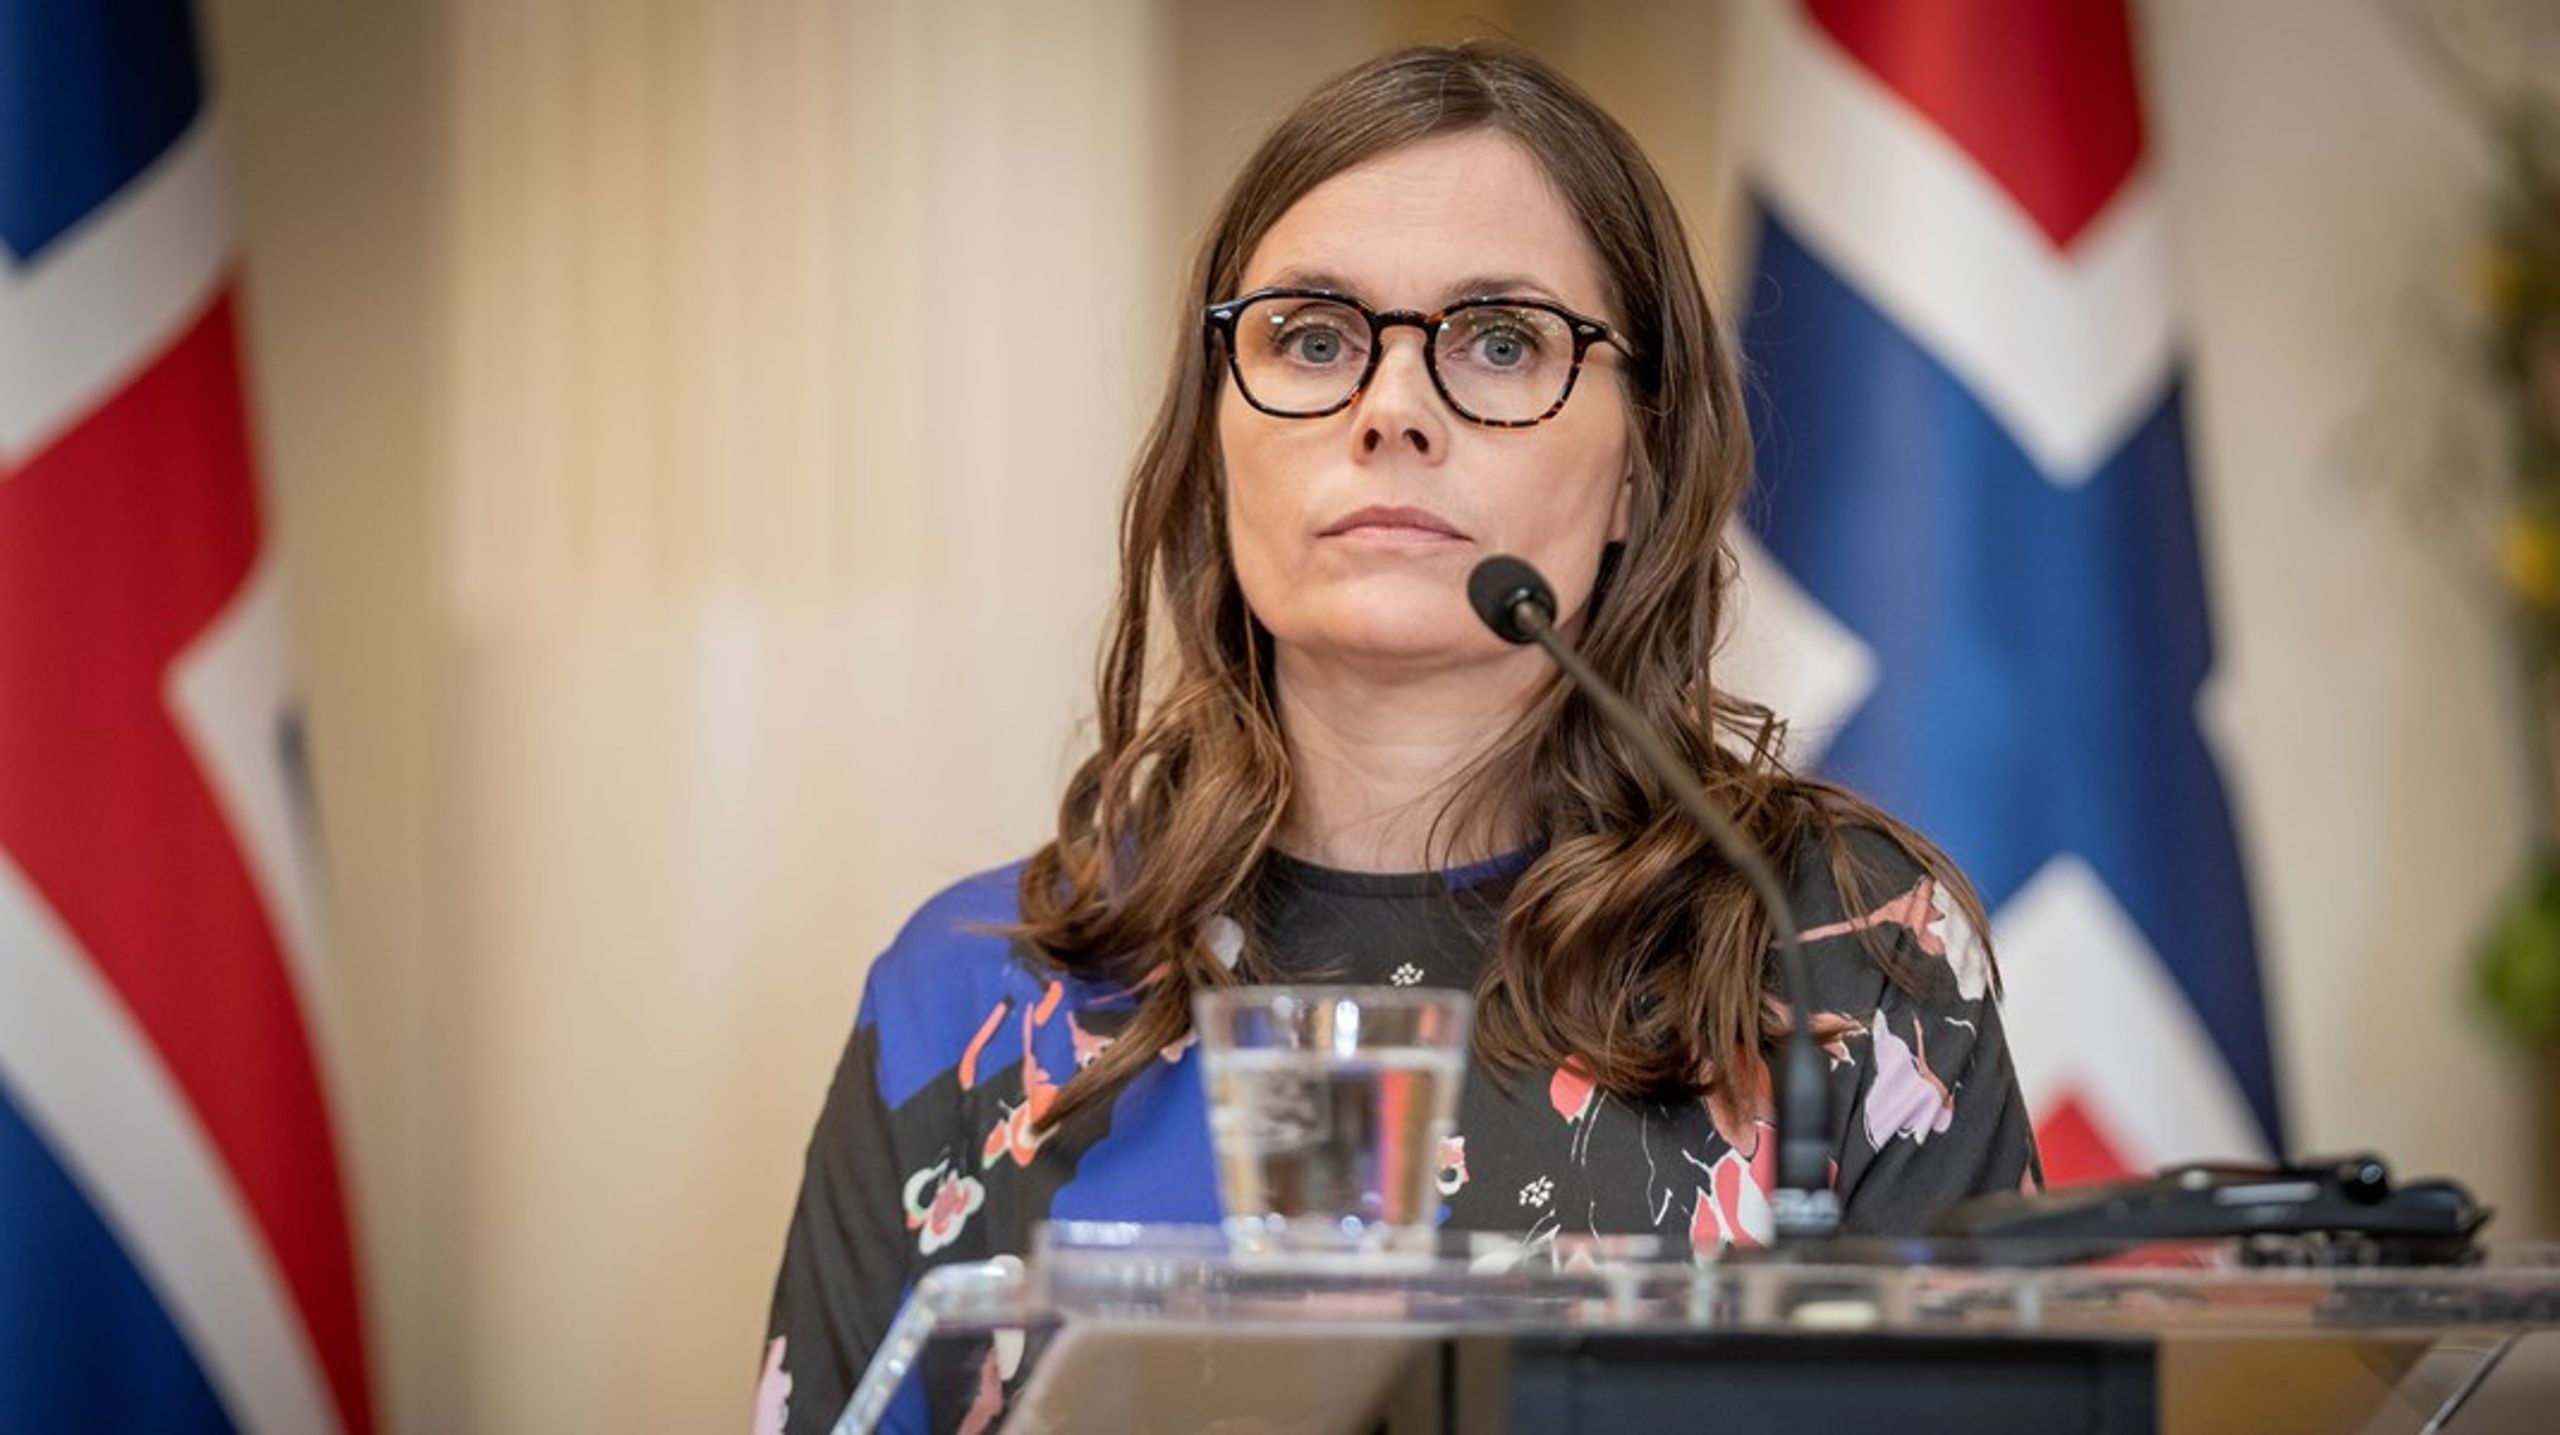 Toppmötet i Reykjavik ger oss en unik möjlighet att förstärka själva principerna på vilka Europarådet inrättades och staka ut en tydlig väg framåt, skriver Islands statsminister&nbsp;Katrín Jakobsdóttir och utrikesminister Þórdís Kolbrún Reykfjörð Gylfadóttir.&nbsp;